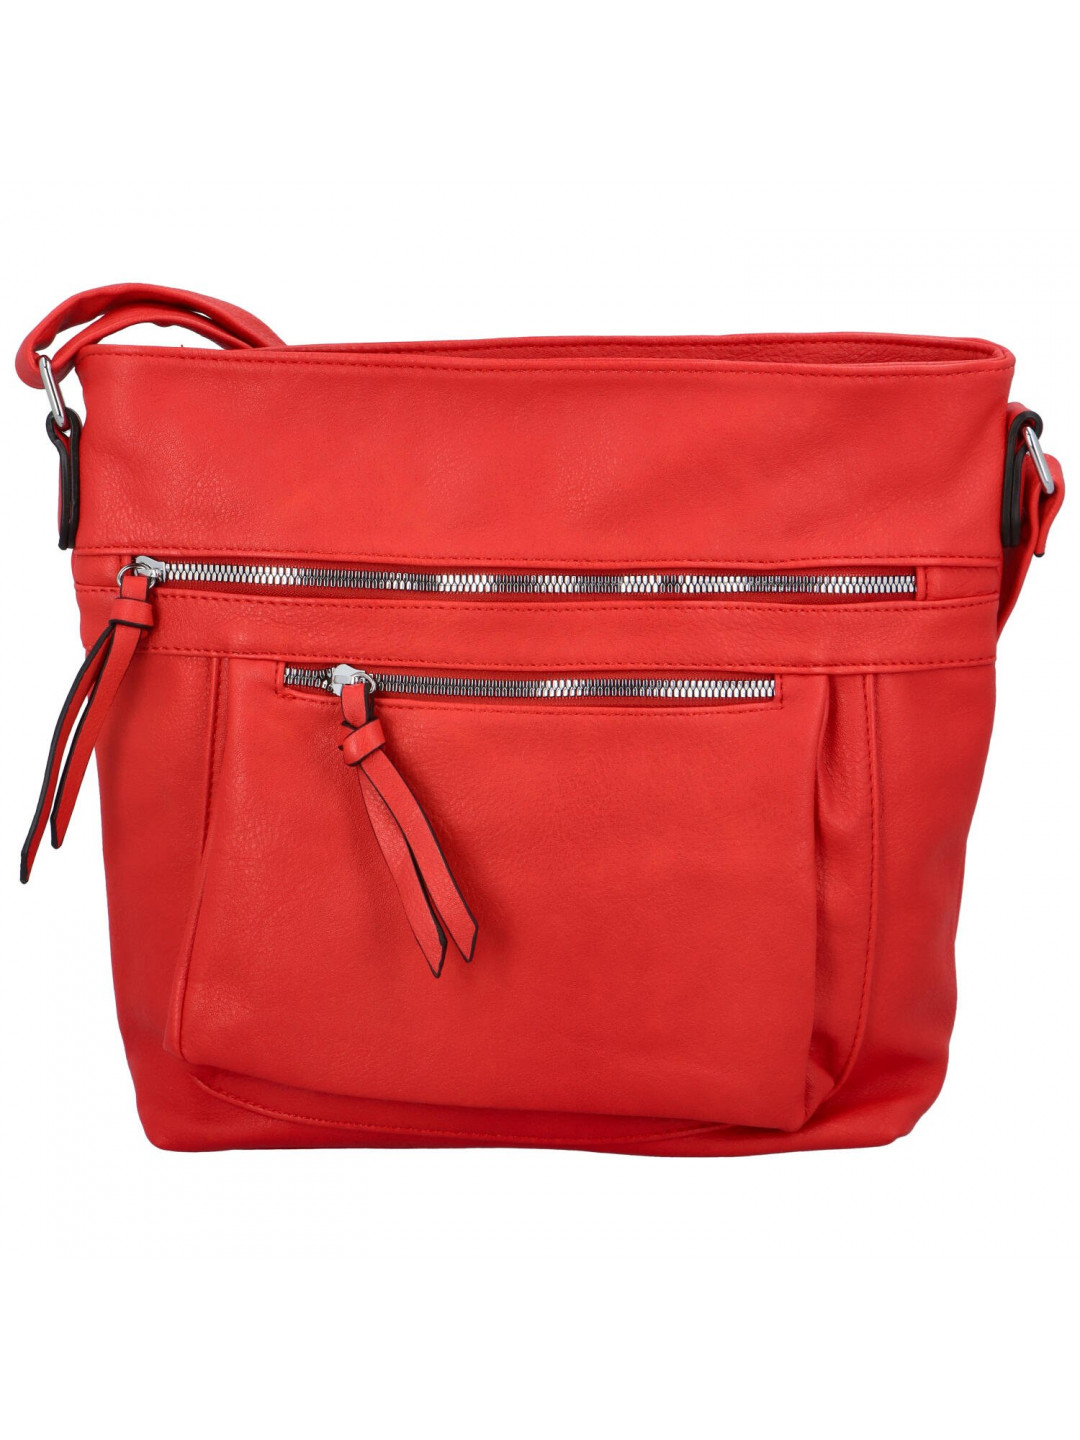 Dámská crossbody kabelka červená – Paolo bags Xanthe